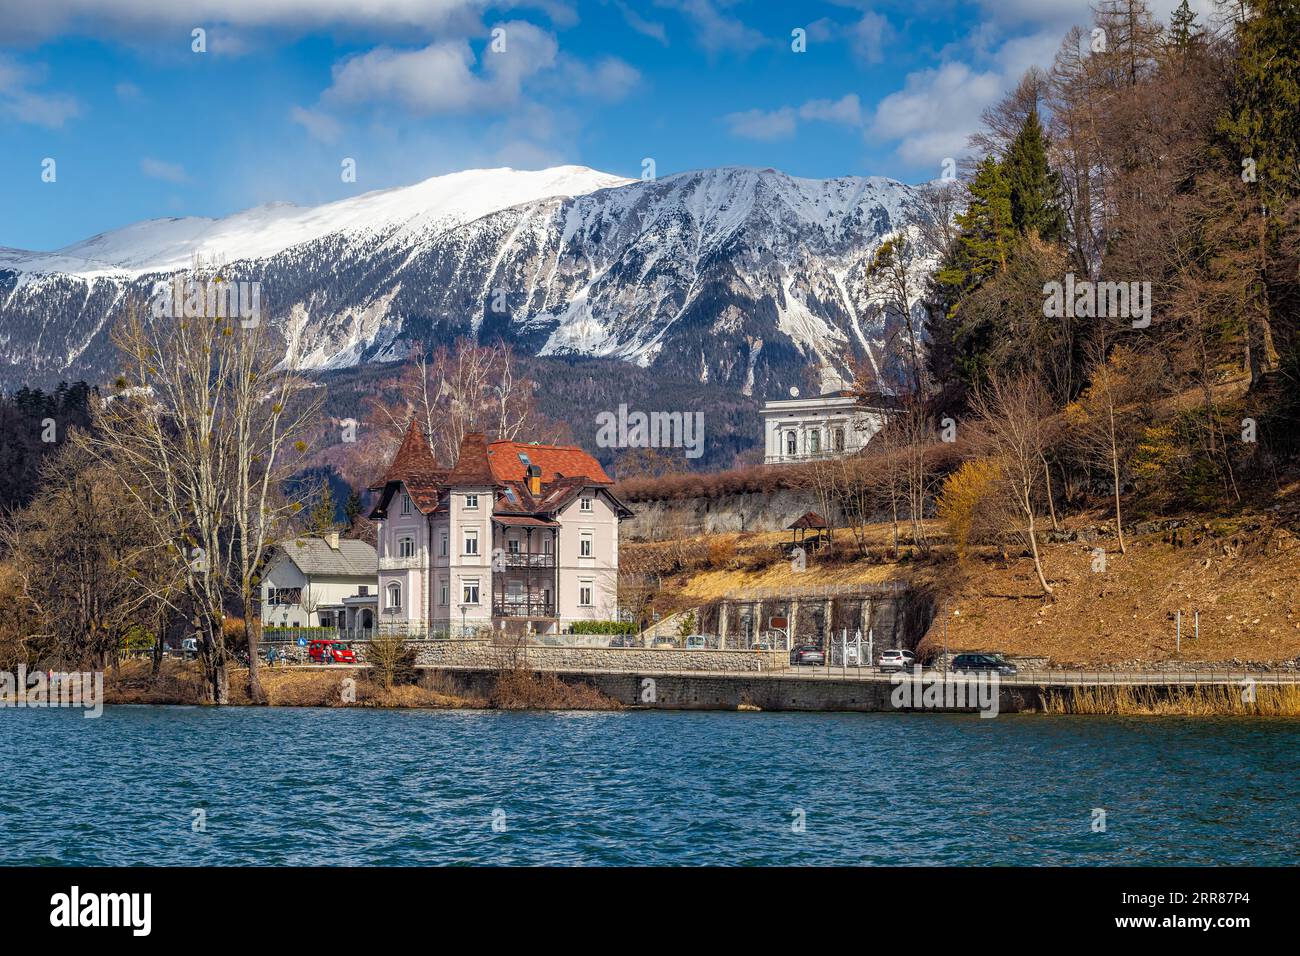 Bled, Slovénie - charmant hôtel au lac de Bled avec les Alpes juliennes en arrière-plan par une journée ensoleillée d'hiver. Ciel bleu et nuages Banque D'Images